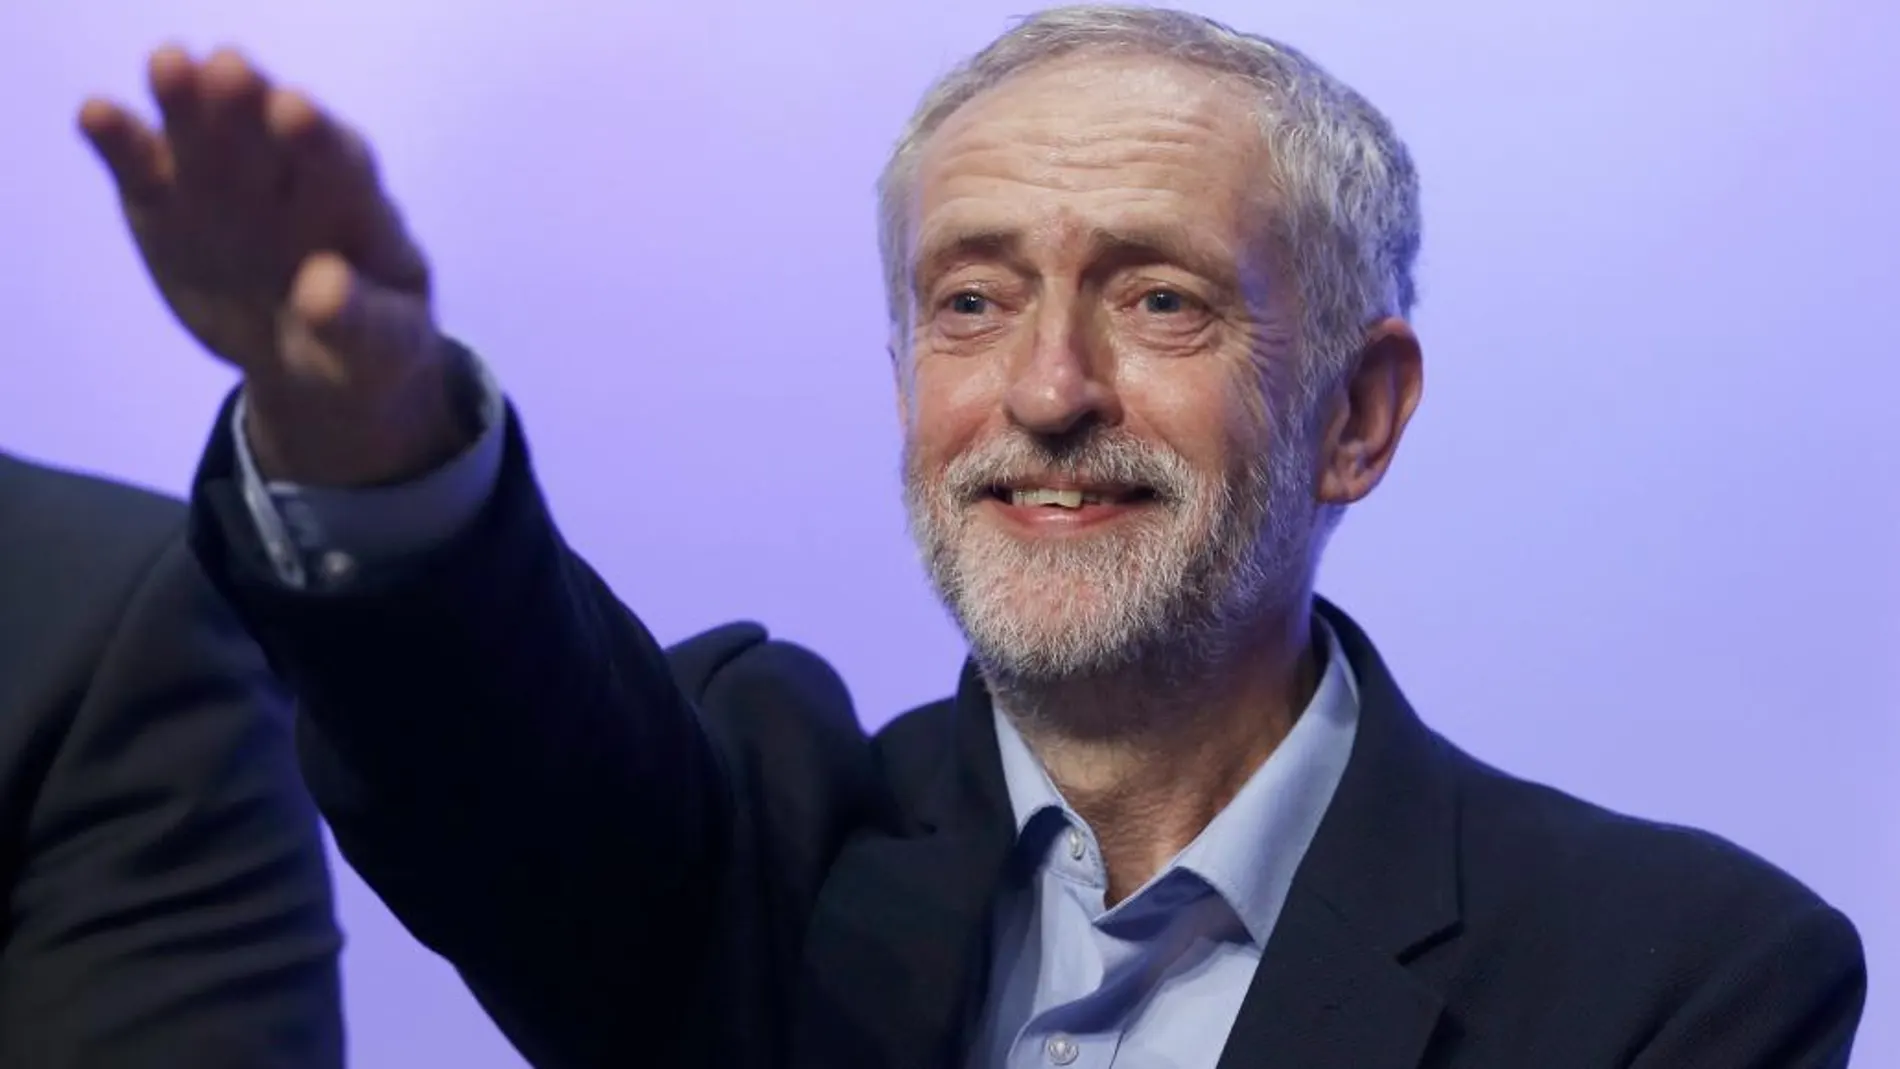 El nuevo líder del Partido laborislta, Jeremy Corbyn, gesticula durante su discurso en el congreso anual de la confederación sindical TUC,